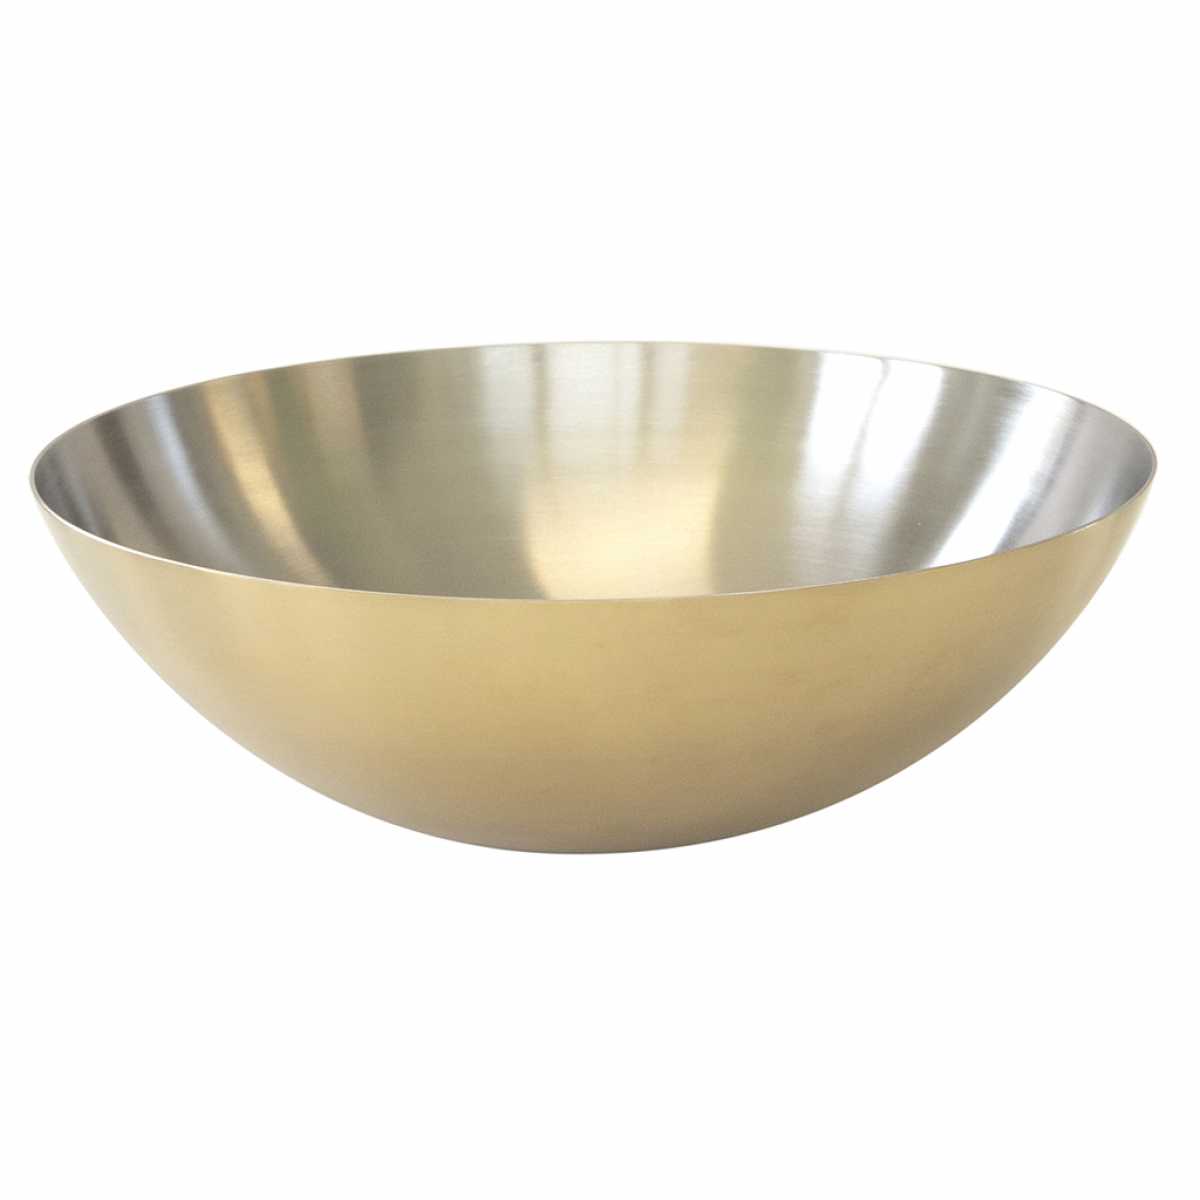 CRASTER Tilt Brass Bowl – Large